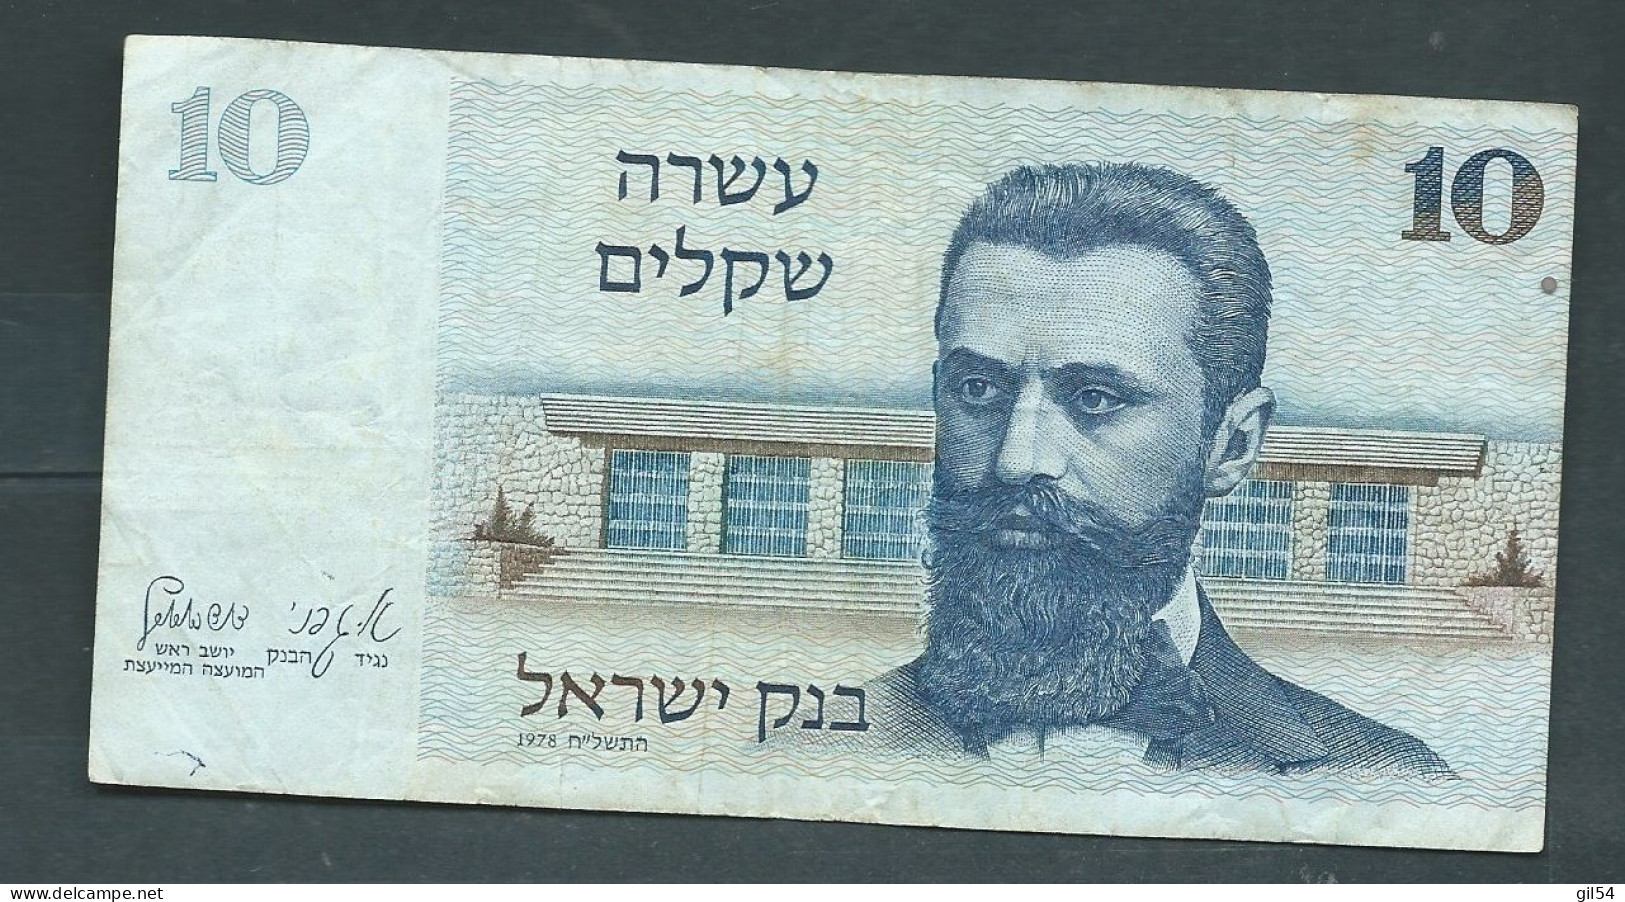 Israel 10 Sheqalim 1978 - 6382226142  Laura 14107 - Israel